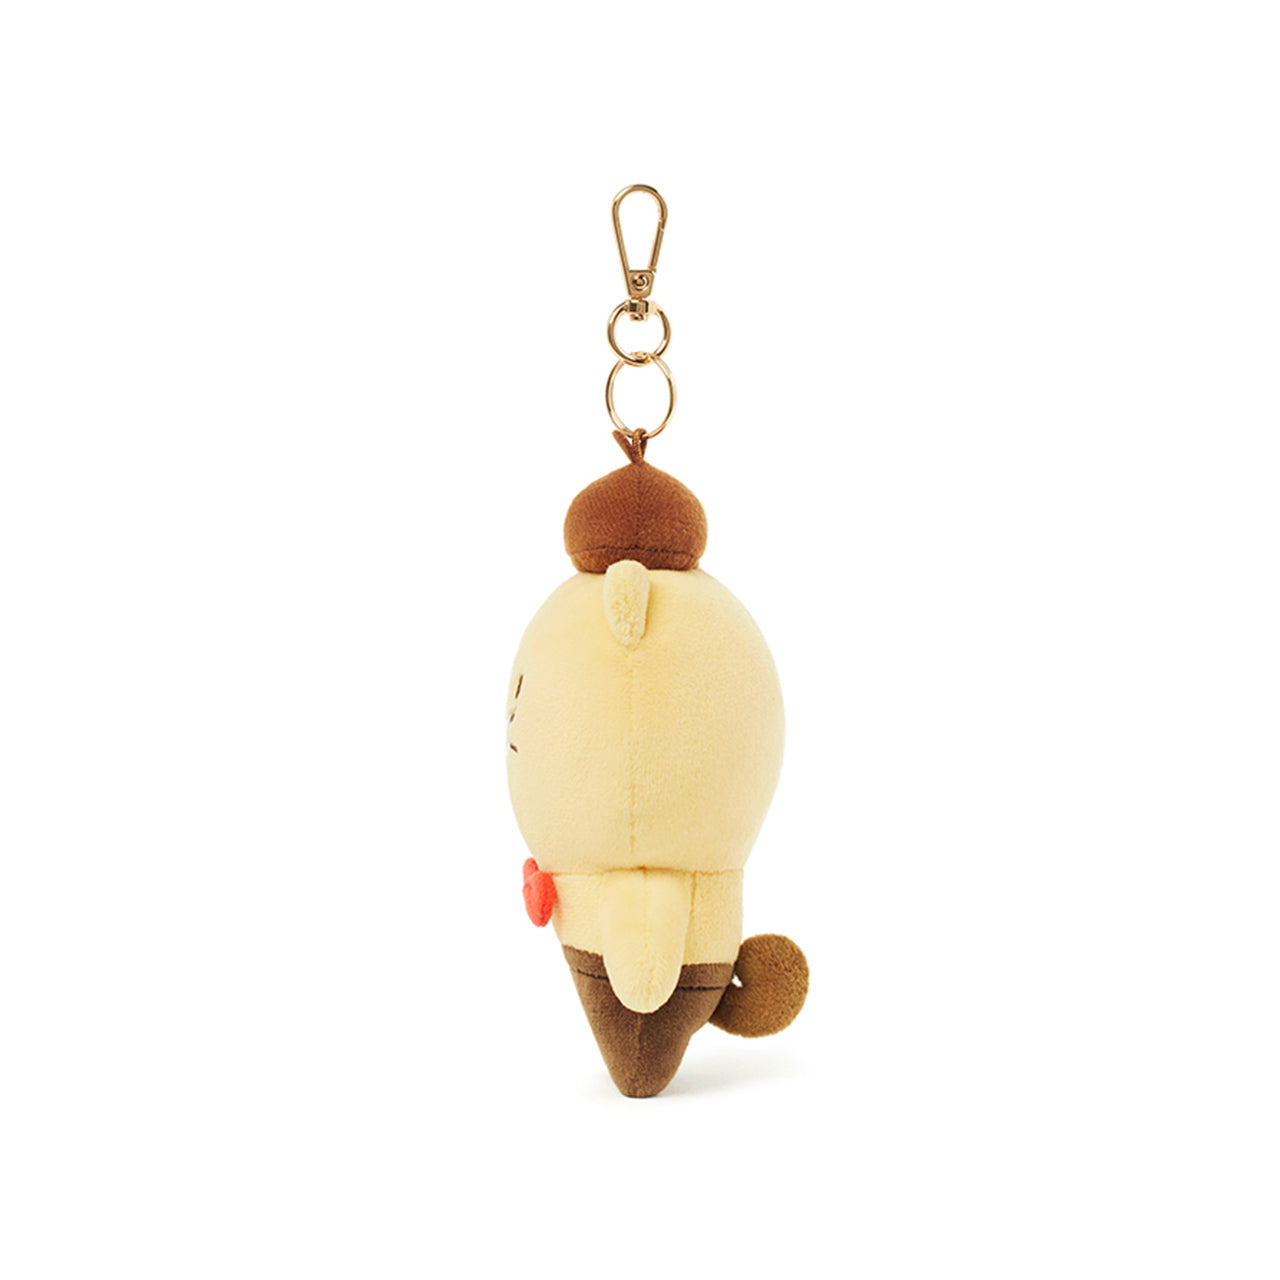 Choonsik Soft Plush Toy Keychain